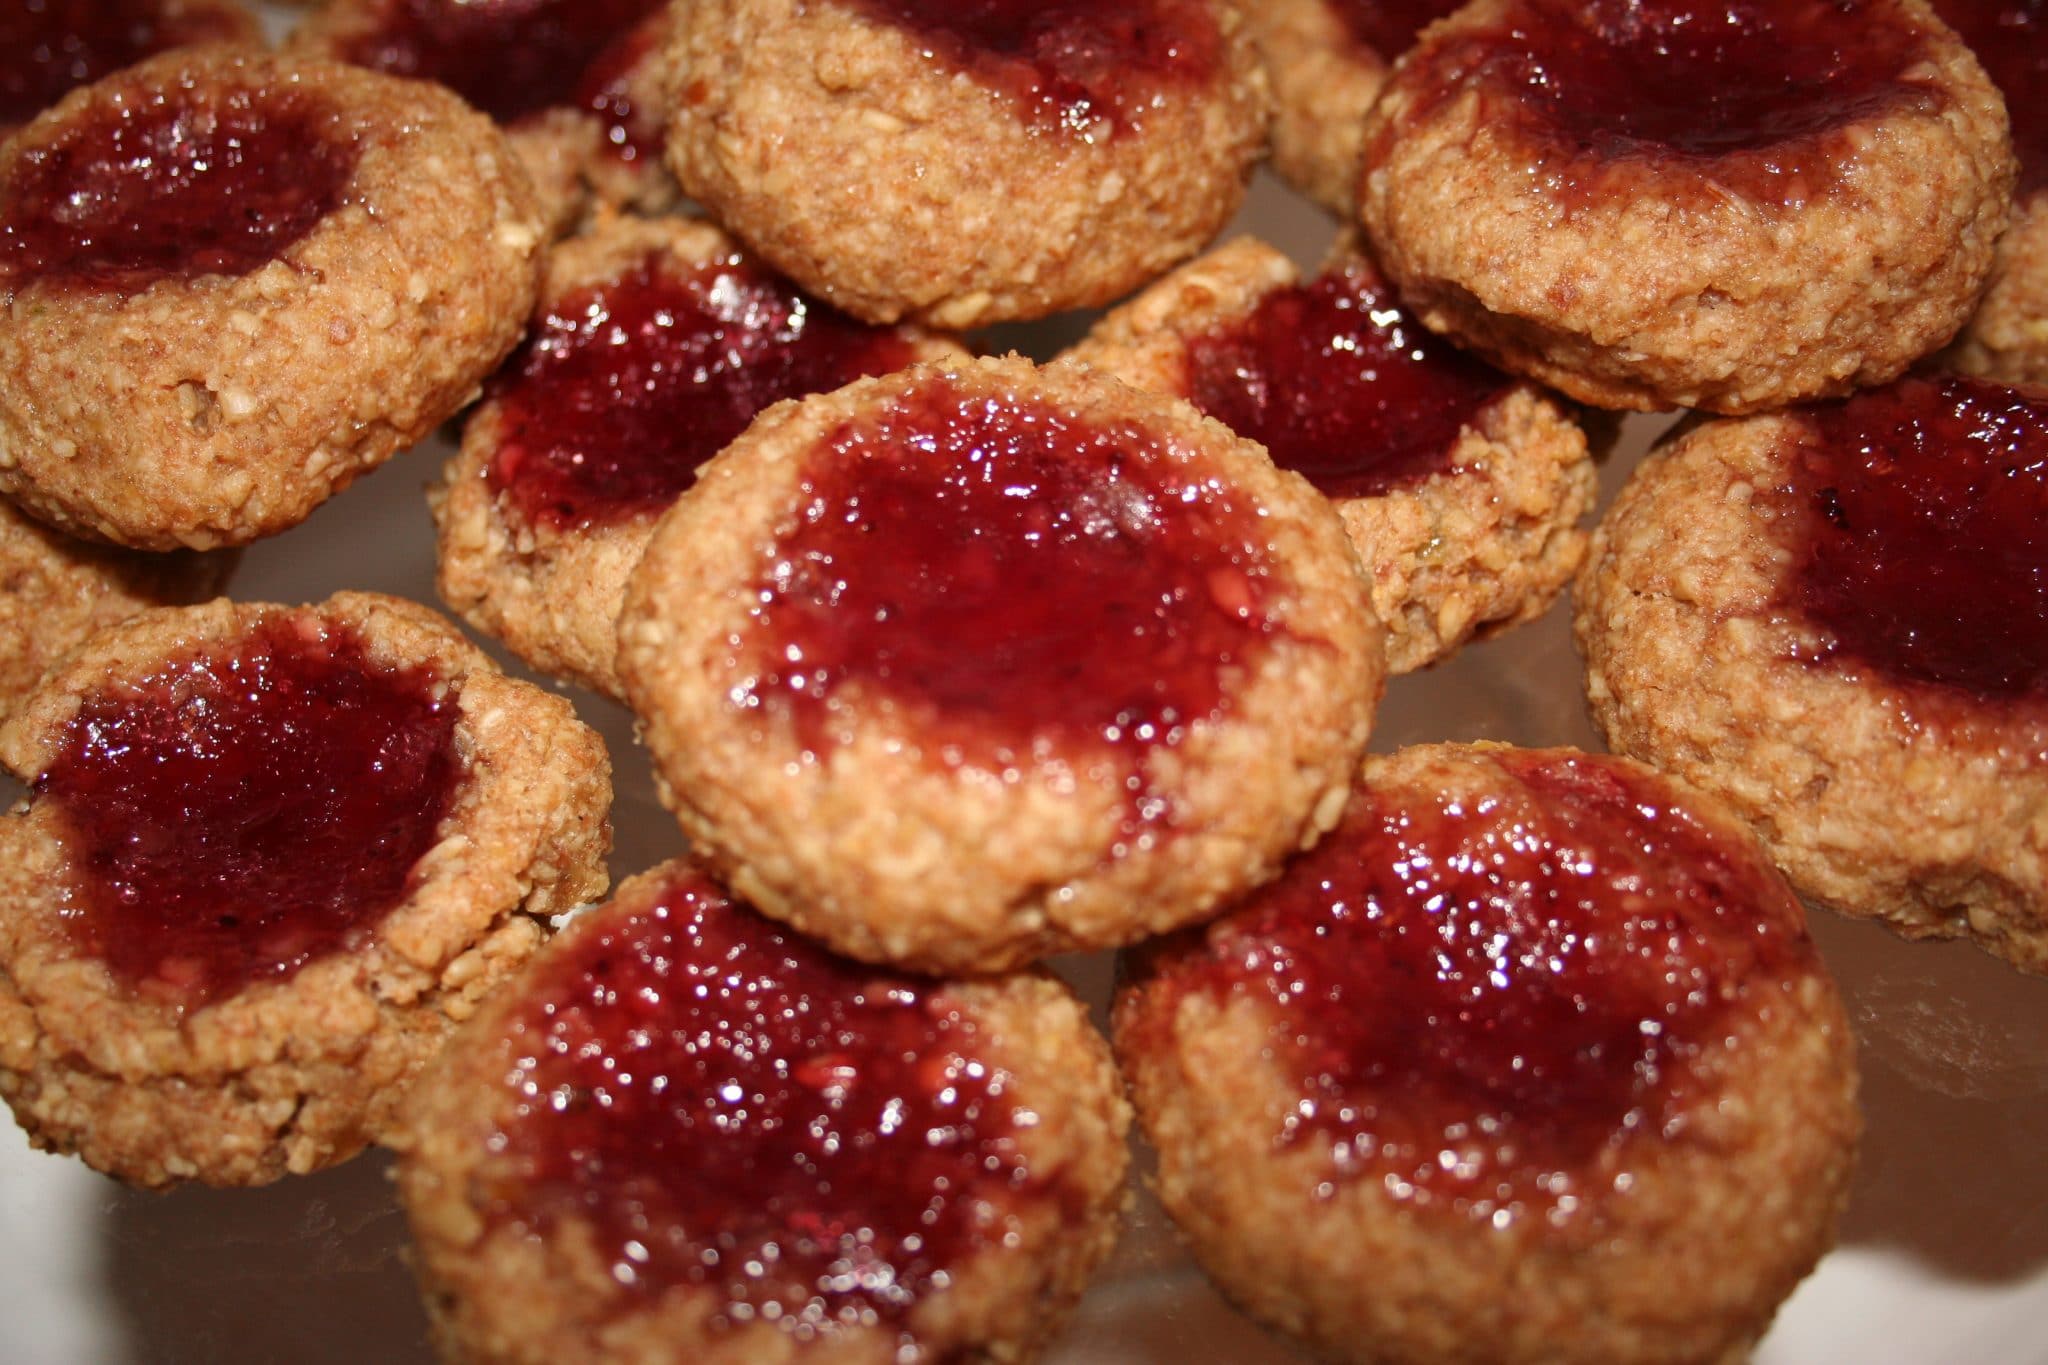 Close up of Vegan Thumbprint Cookies with jam filling